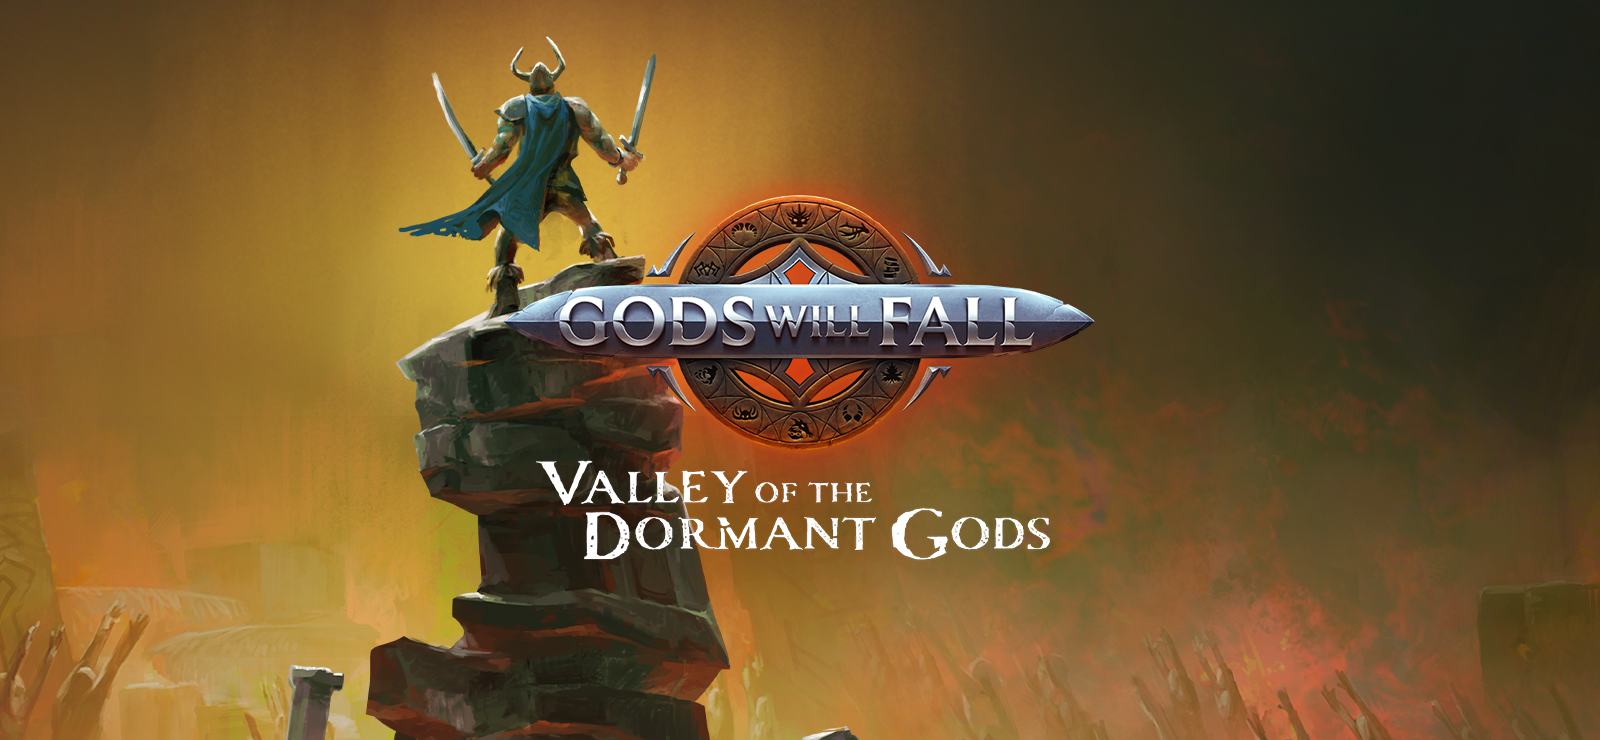 Gods Will Fall - Valley Of The Dormant Gods Season Pass